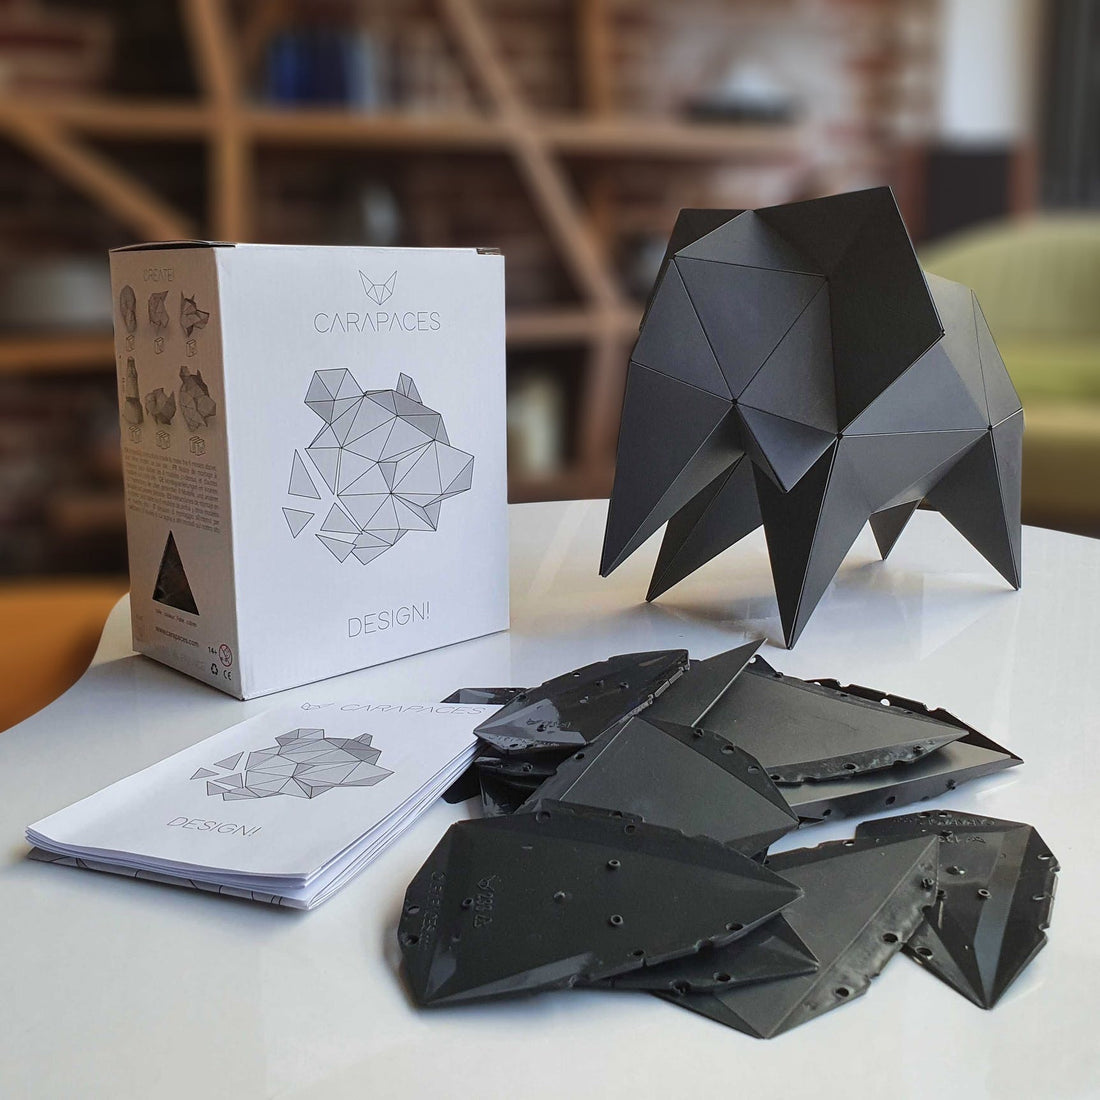 Elefante origami 3D - Negro